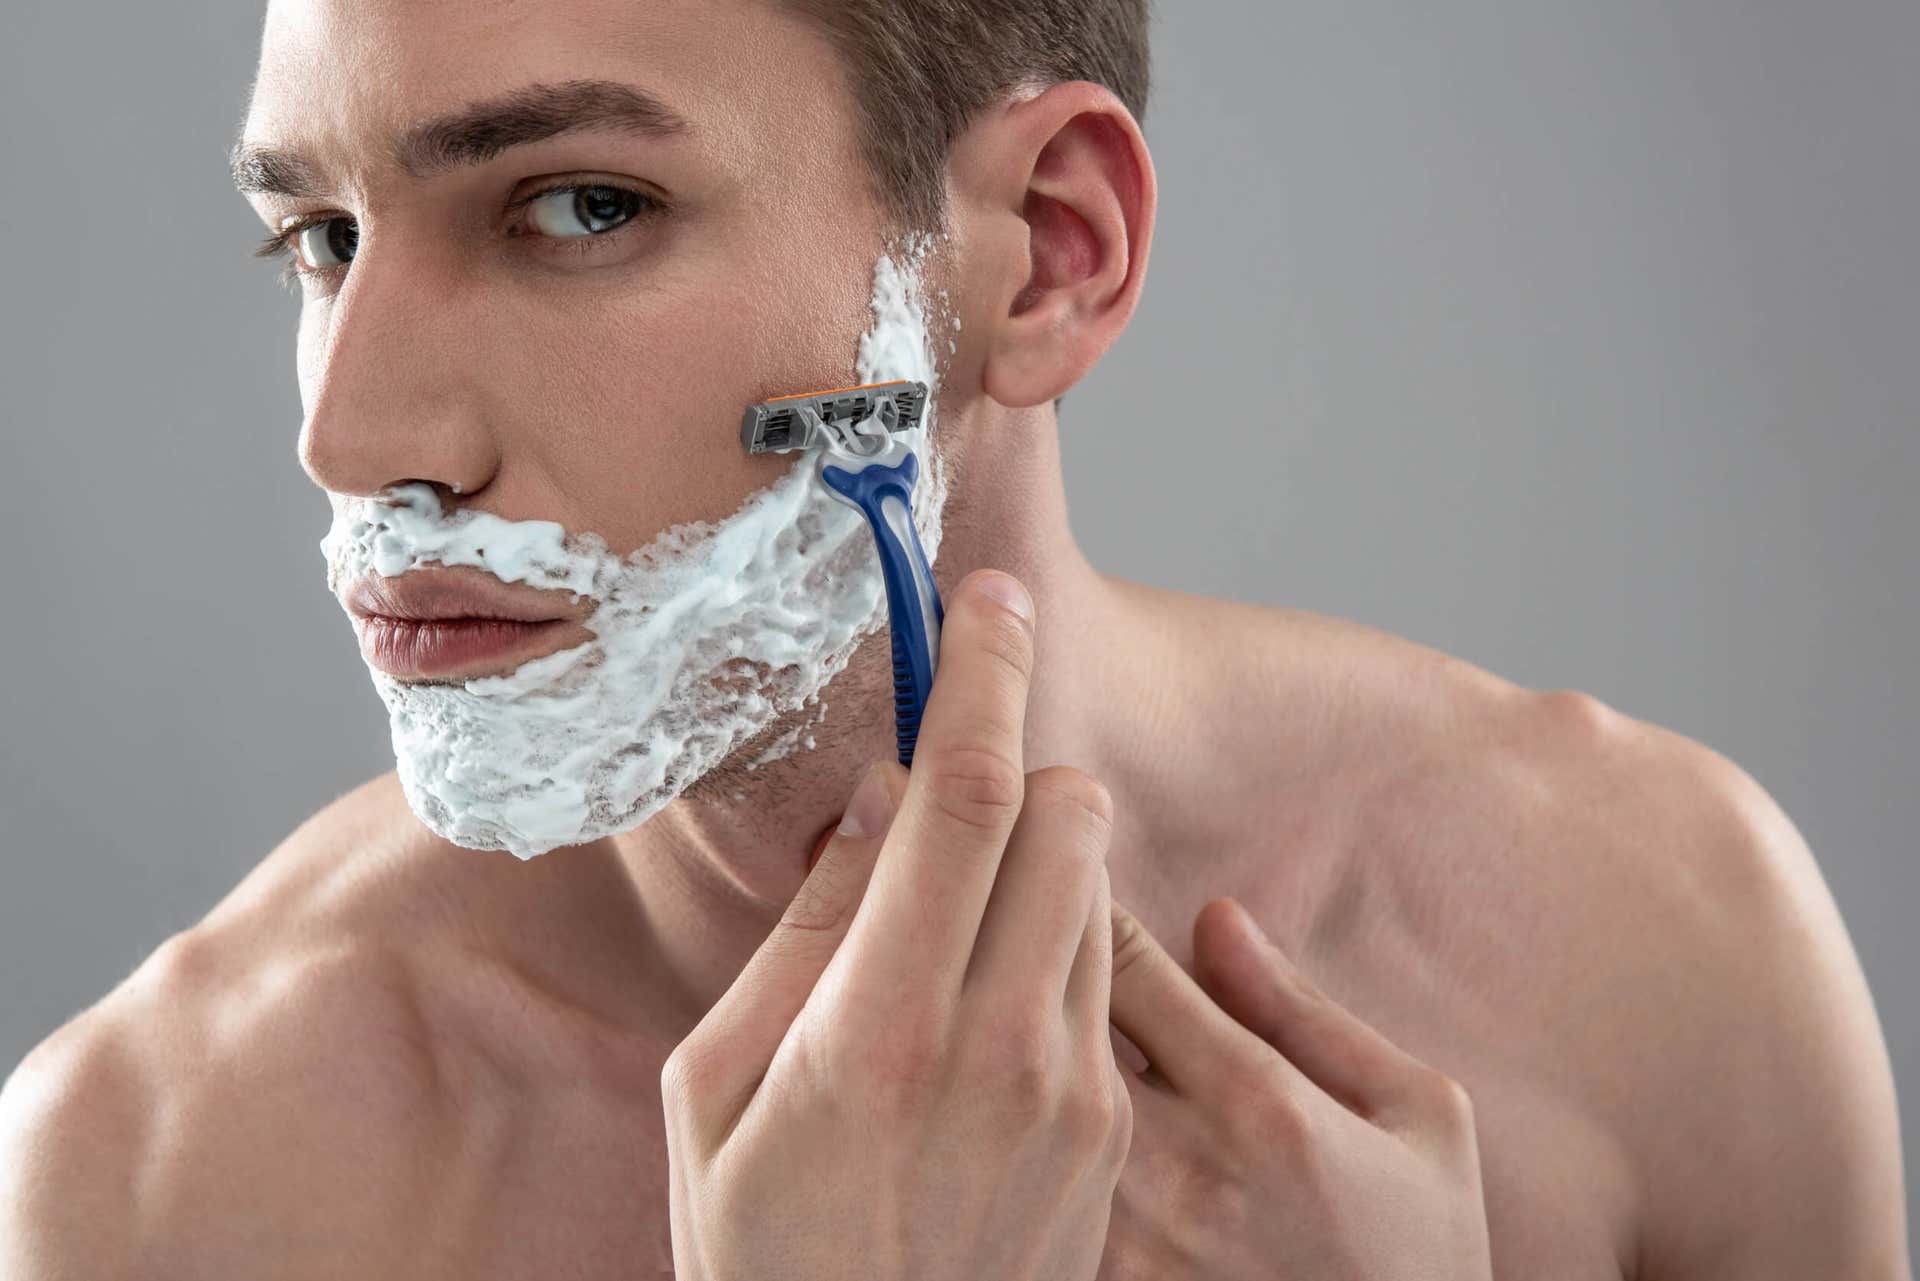 Le rasage chez les hommes ne permet pas à la barbe de pousser.